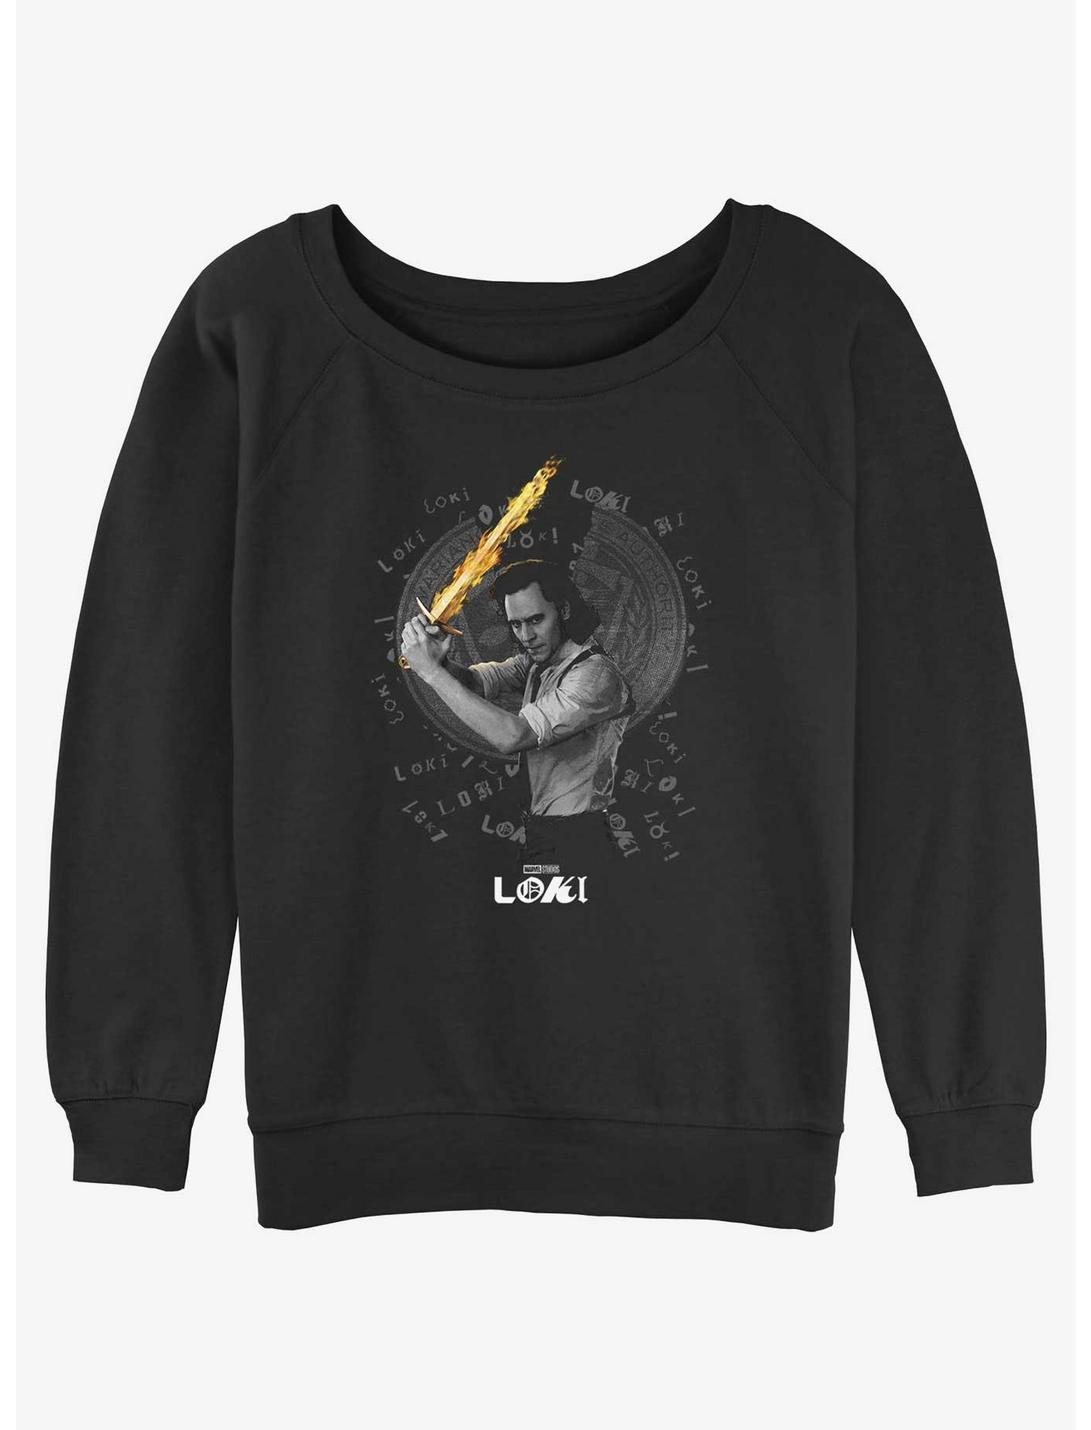 Marvel Loki Laevateinn Flaming Sword Womens Slouchy Sweatshirt, BLACK, hi-res